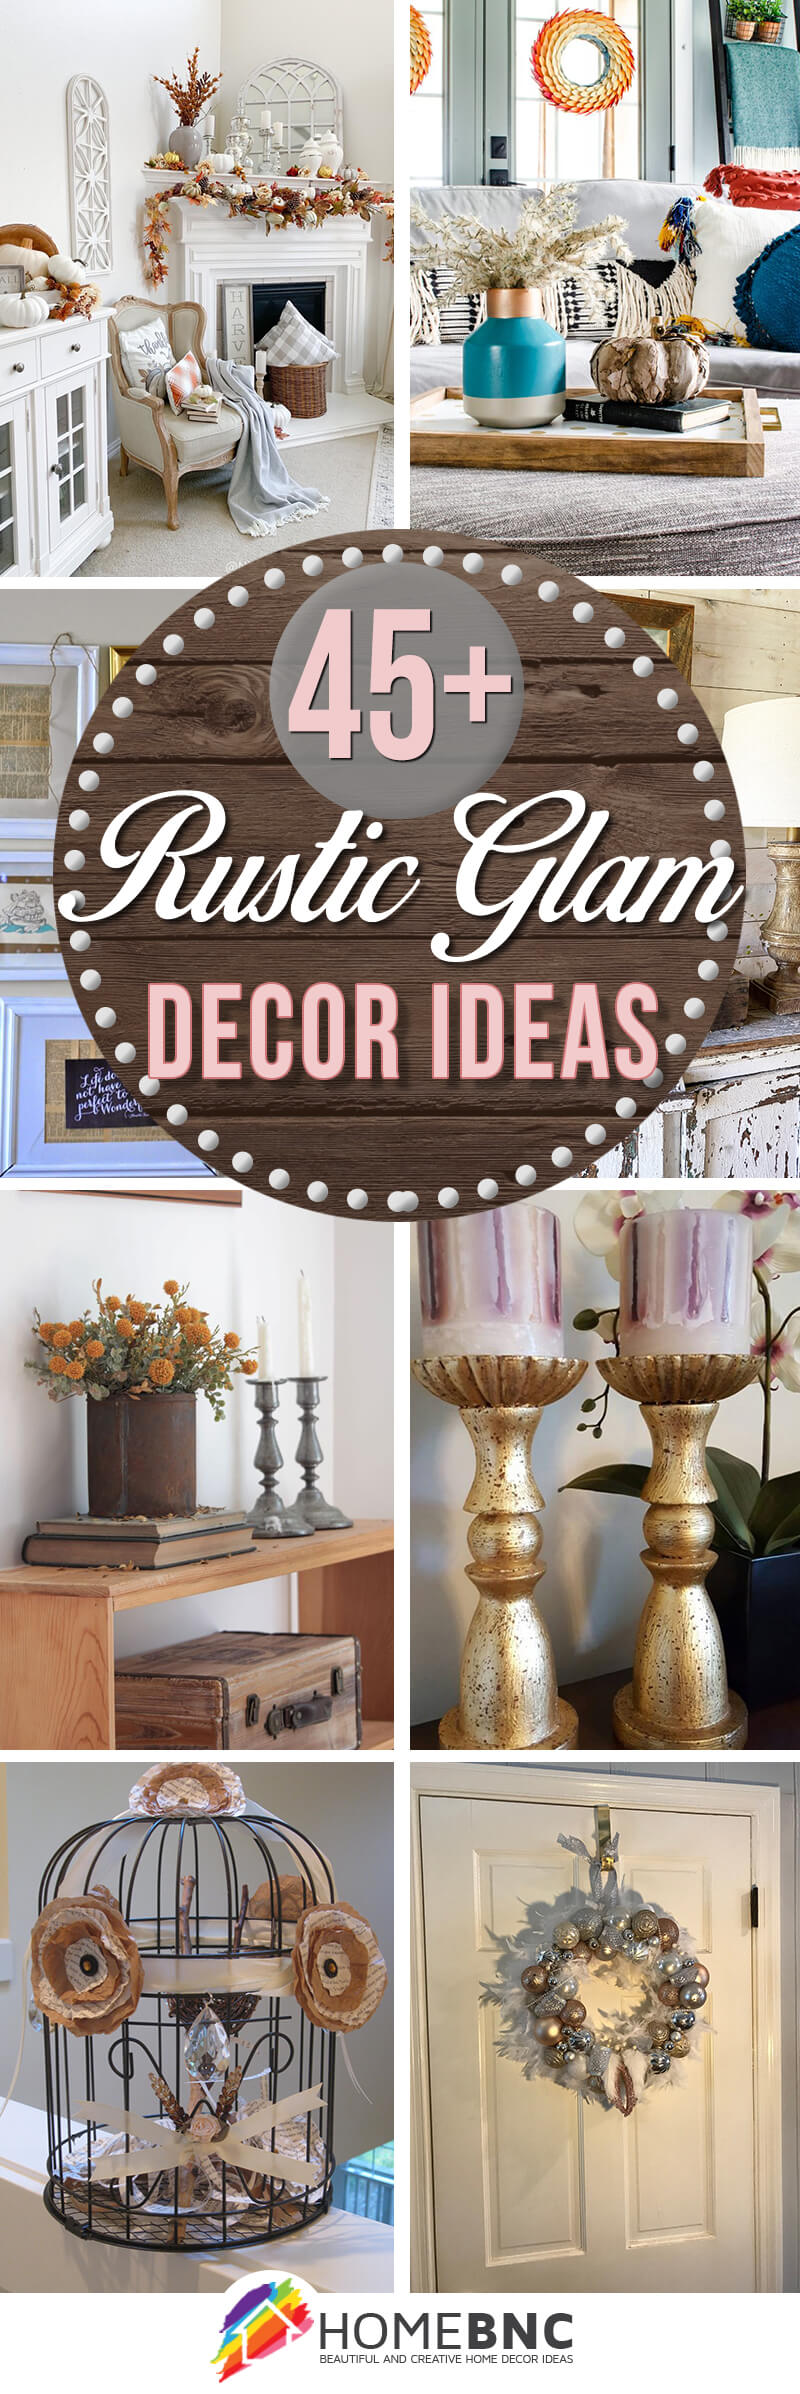 Rustic Glam Decoration Ideas